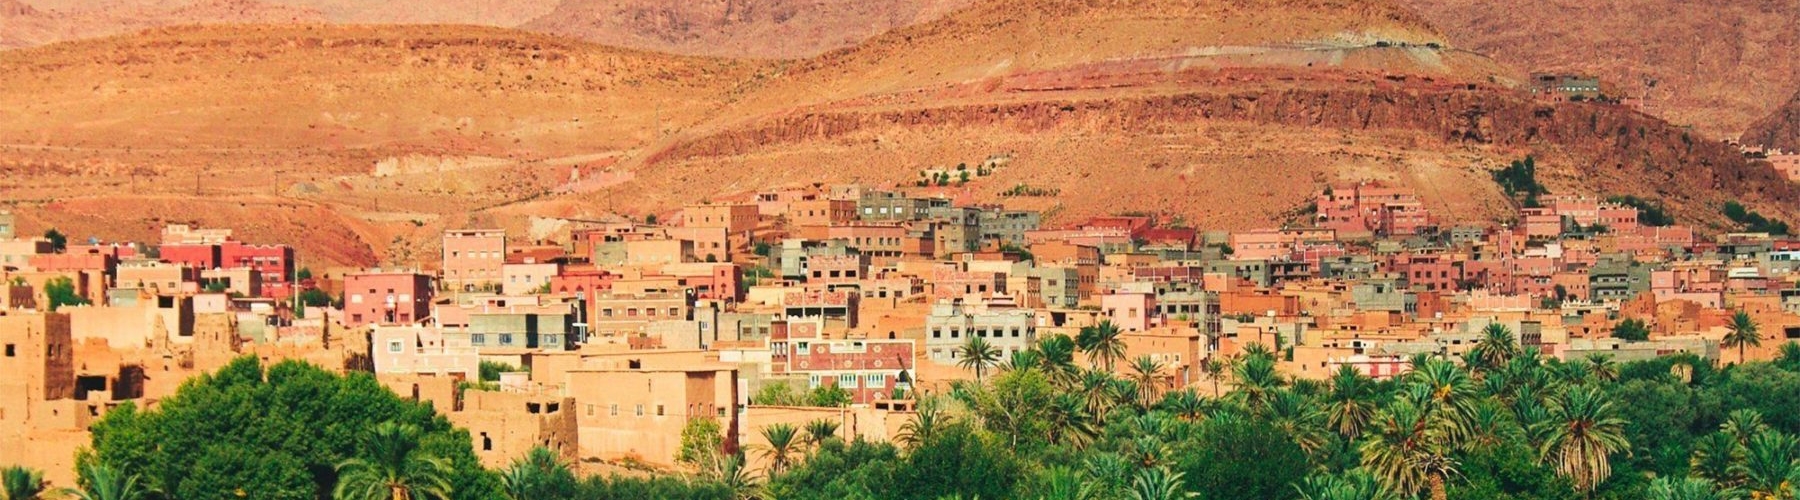 Séminaire au Maroc : Marrakech